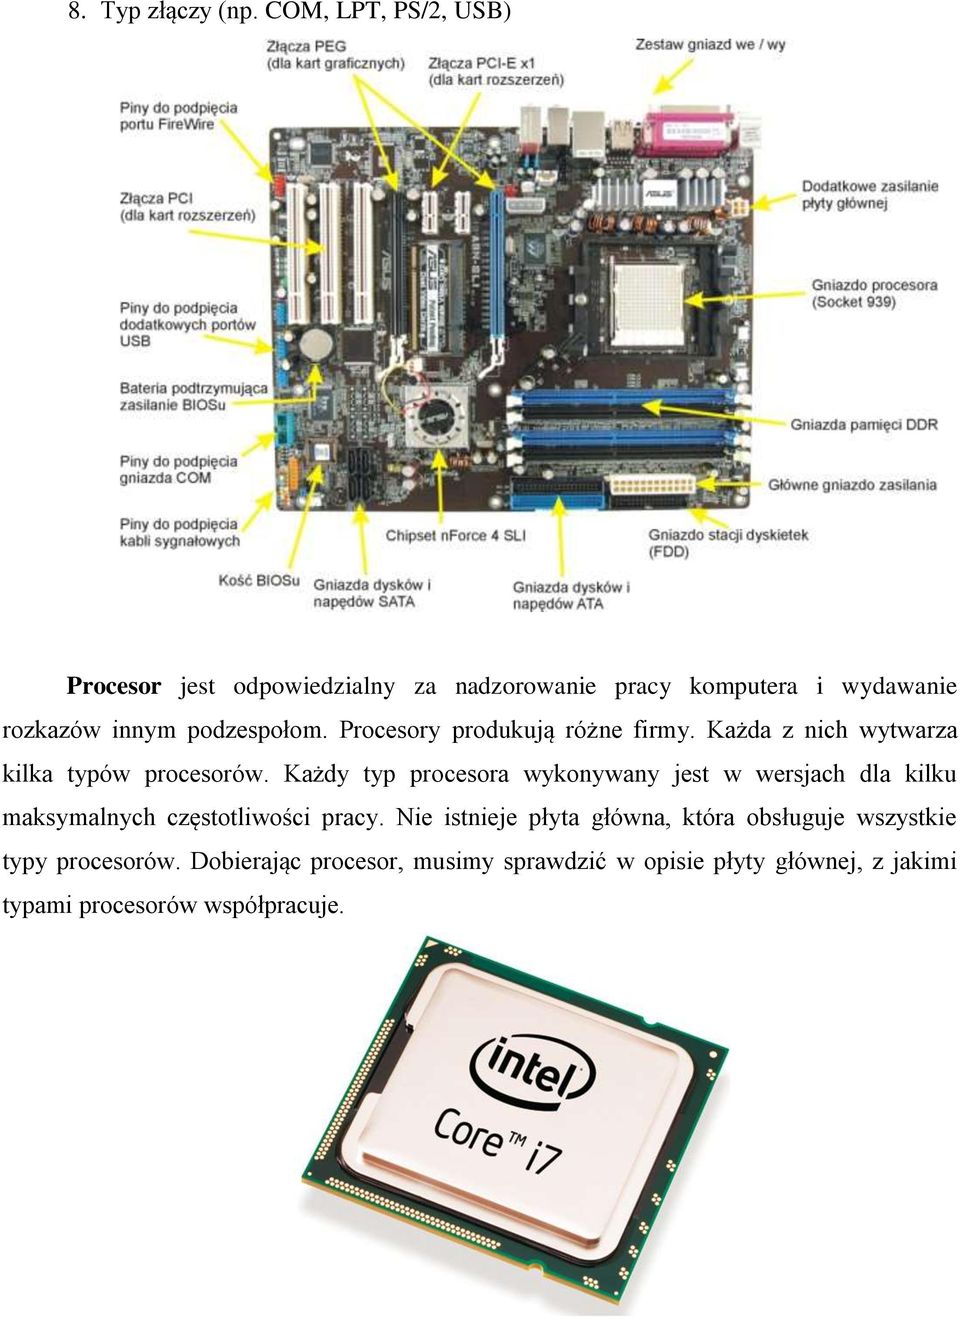 Procesory produkują różne firmy. Każda z nich wytwarza kilka typów procesorów.